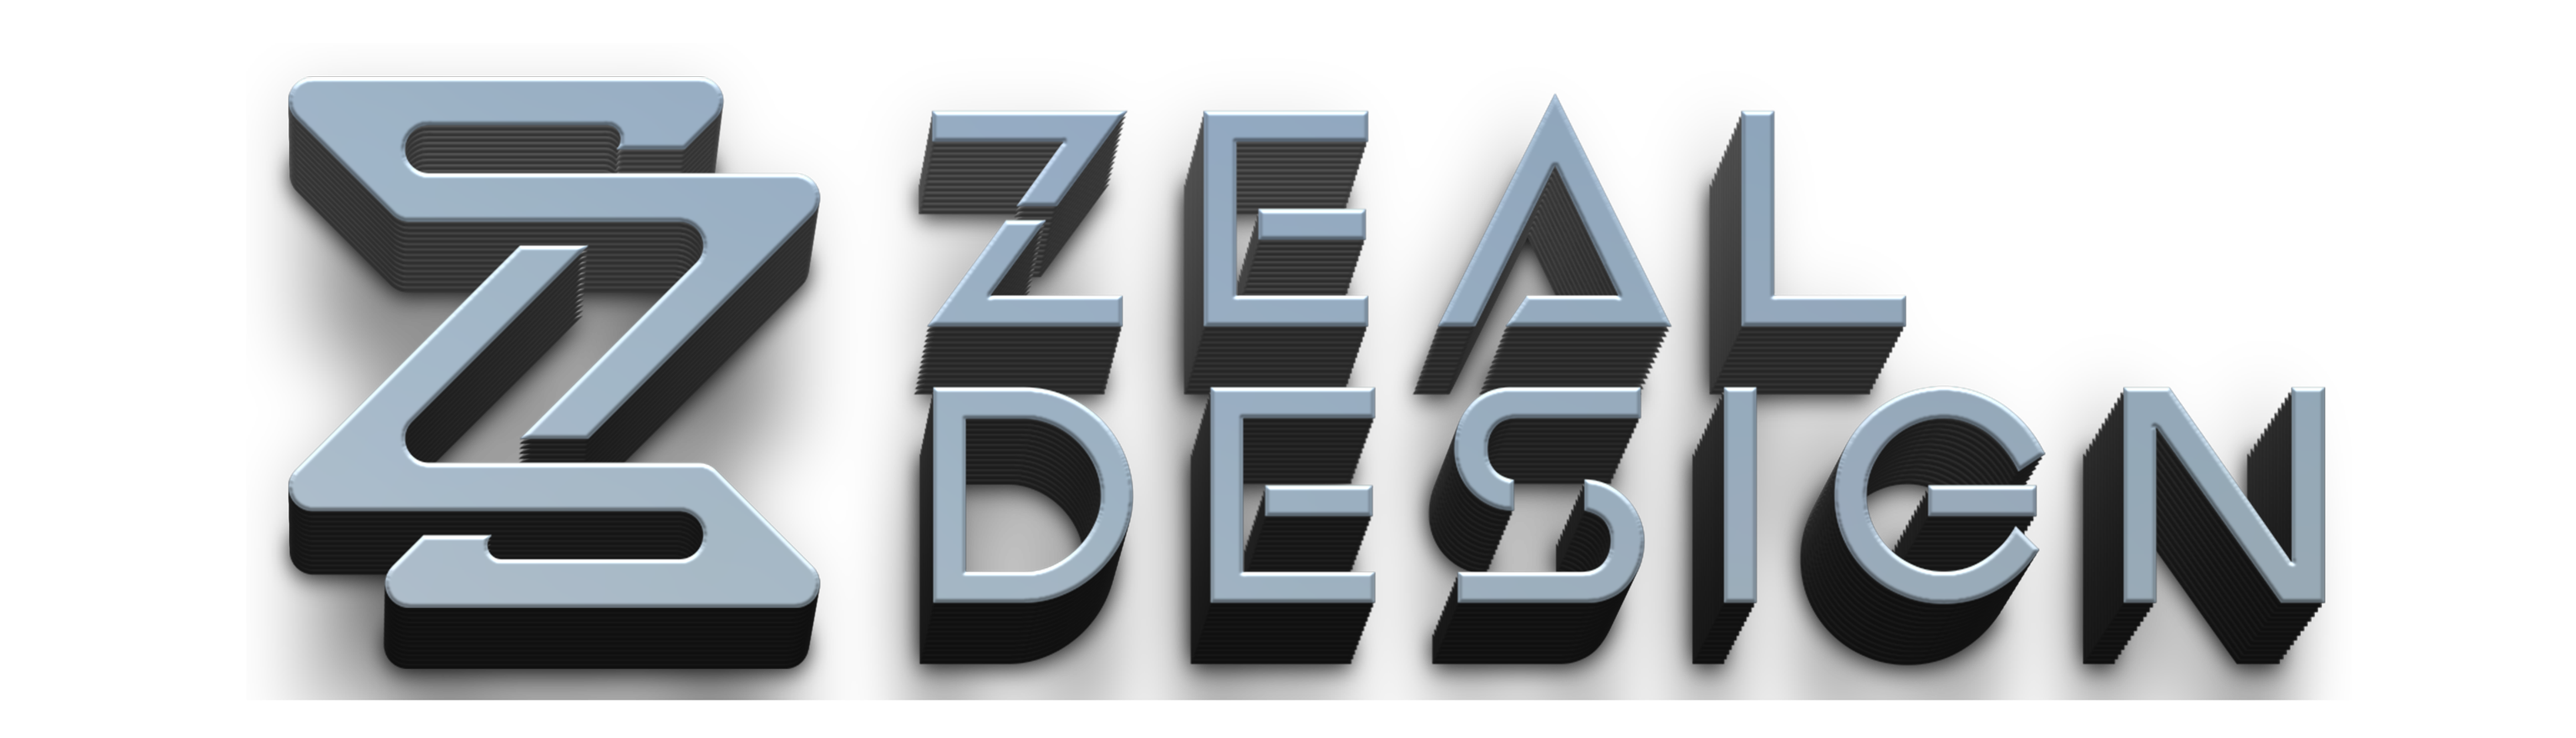 Zeal Design